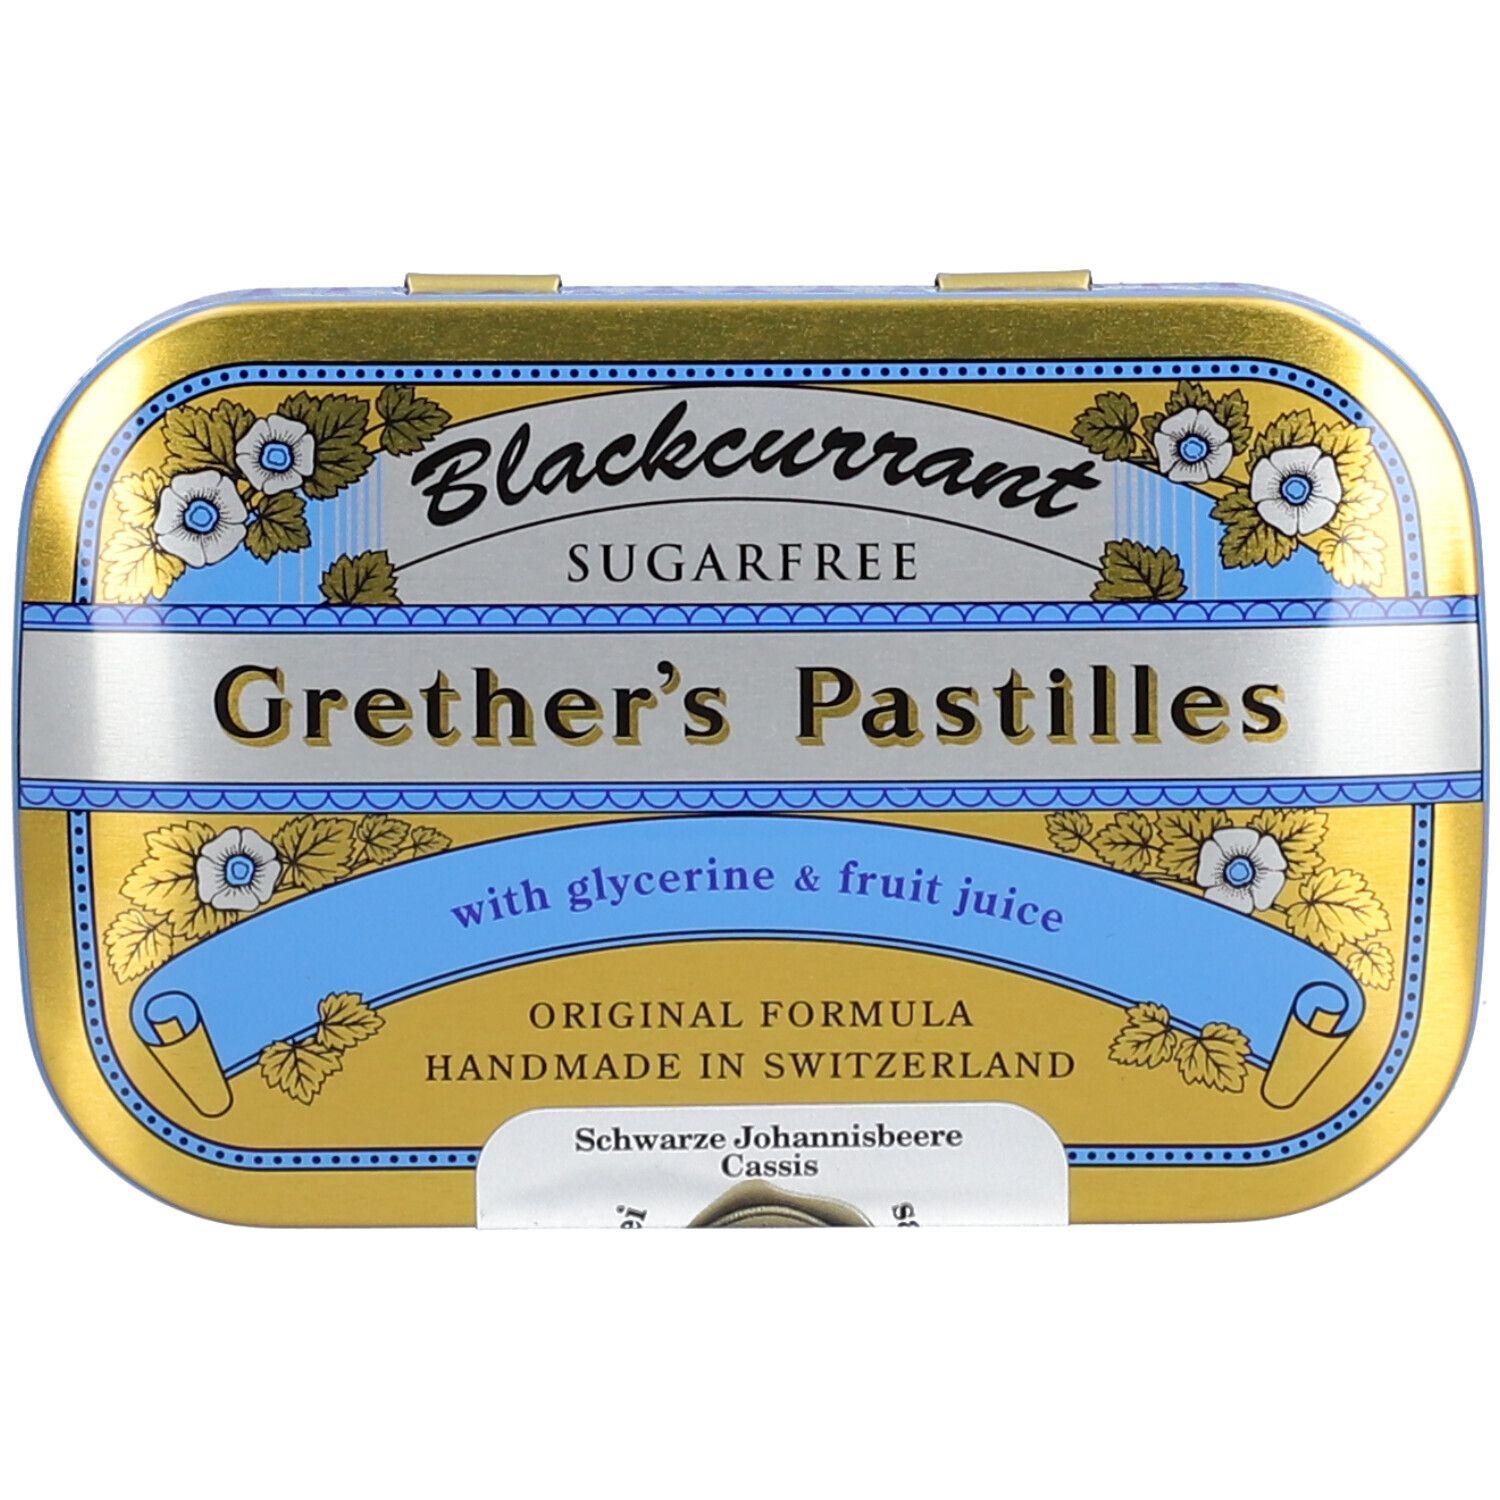 Grether’s Pastilles Blackcurrant Senza Zucchero